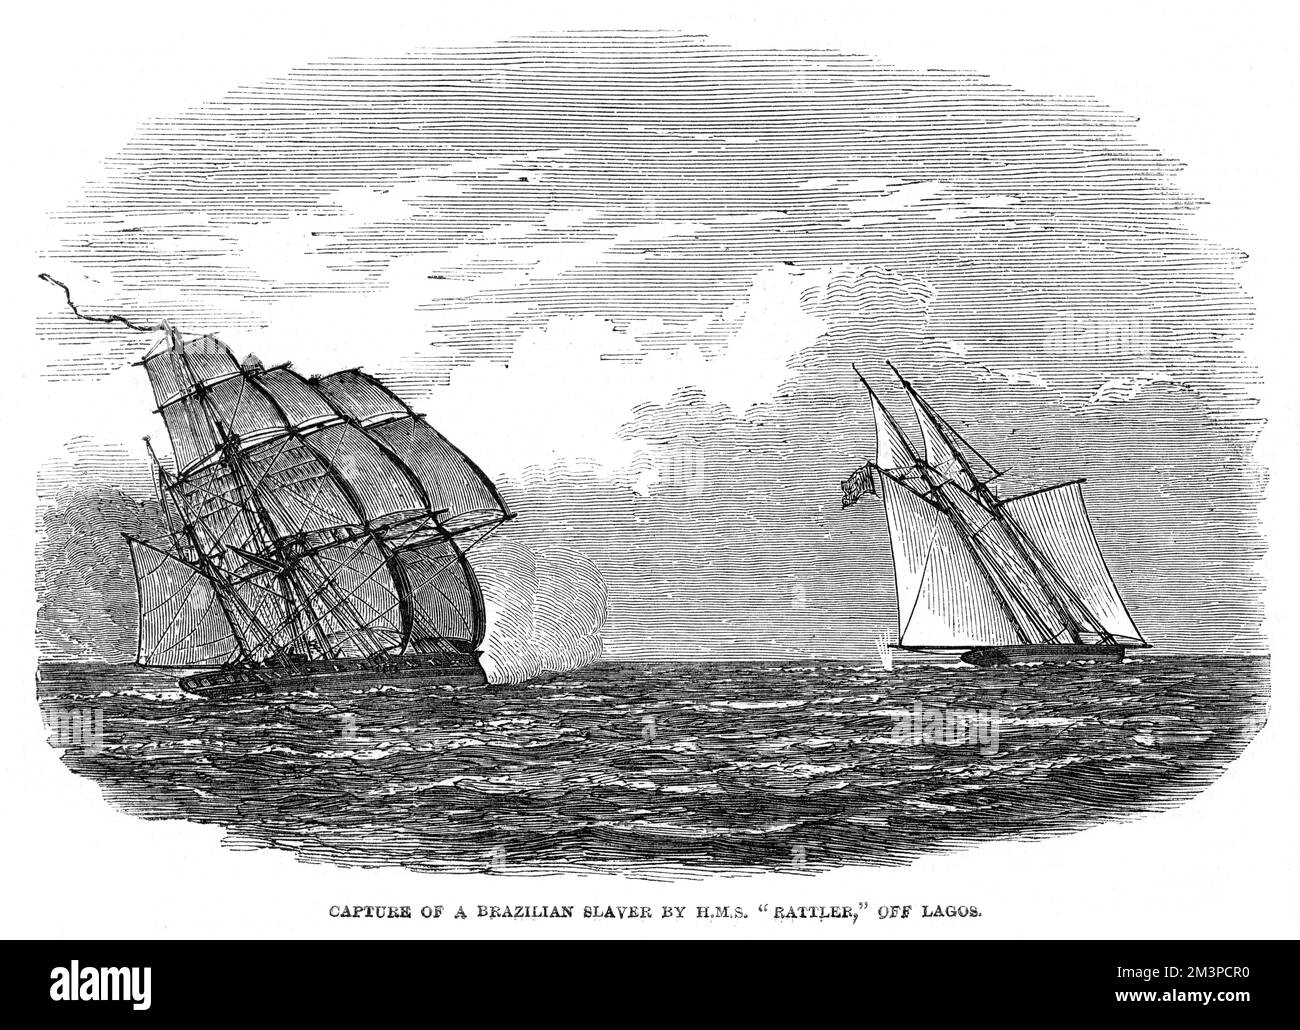 Gefangennahme eines brasilianischen Sklaven, Andorinha, mit dem britischen Schiff HMS Rattler vor Lagos, Nigeria, Westküste Afrikas. Datum: 1849 Stockfoto